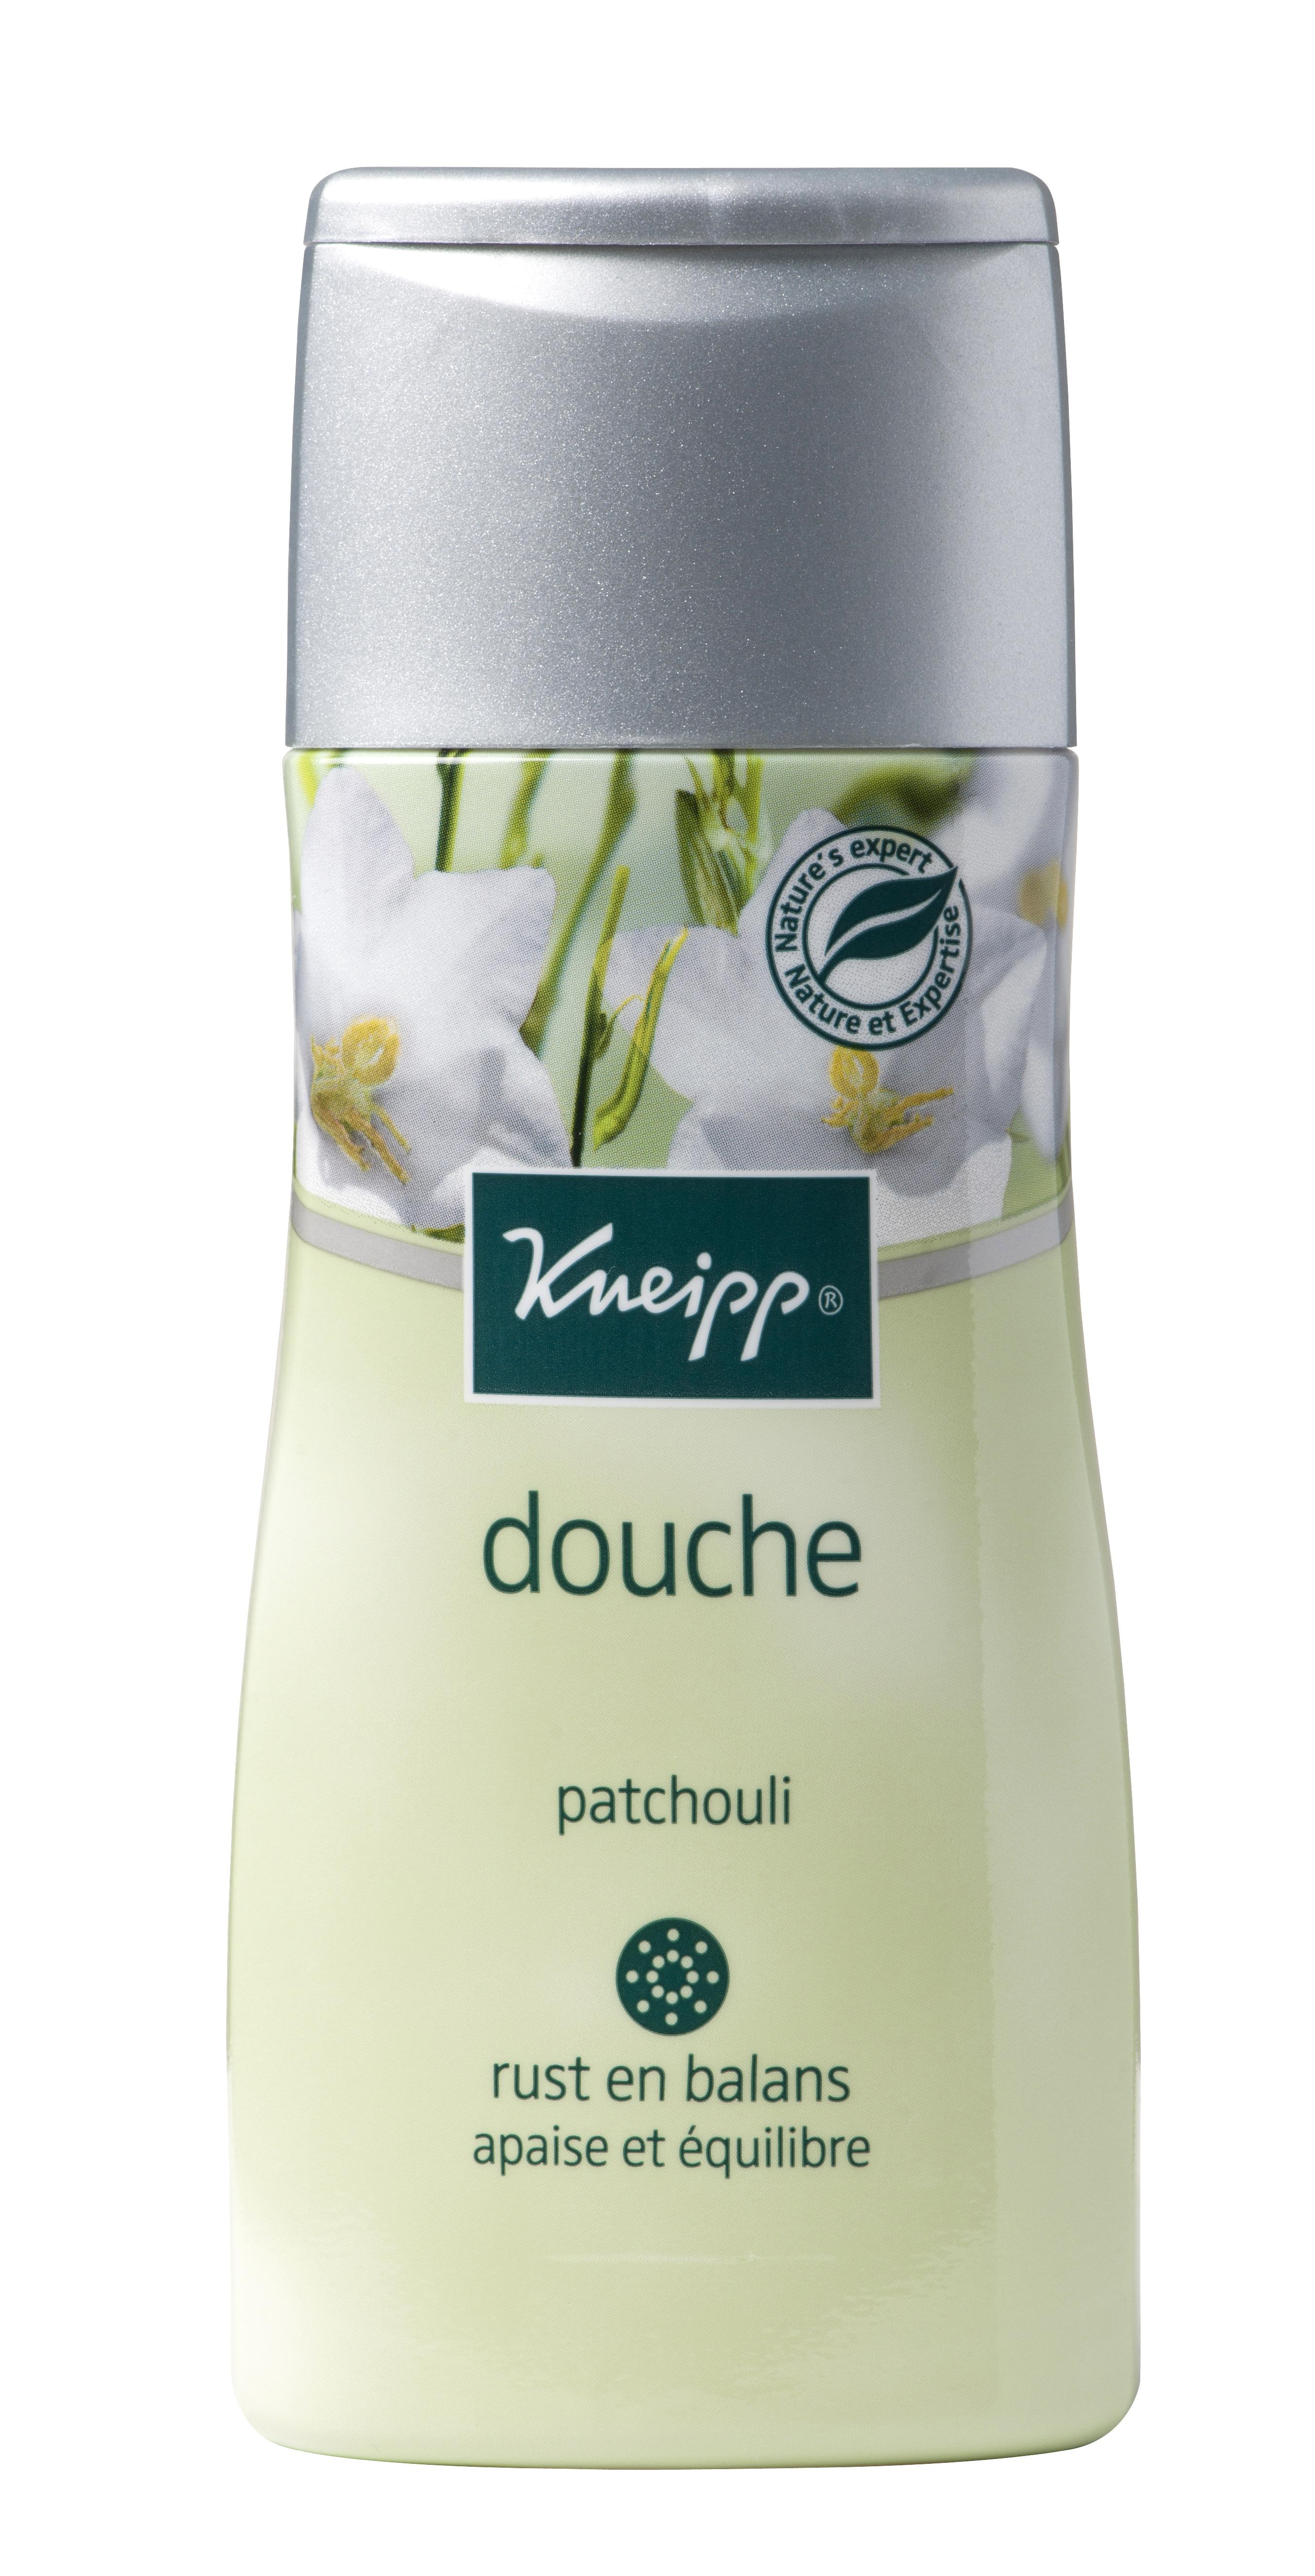 De ontspannende Kneipp Patchouli Douche bevat natuurlijke etherische Patchouli-olie voor een heerlijk rustig gevoel. De speciale doucheformule met Patchouli is puur en zacht voor de huid.